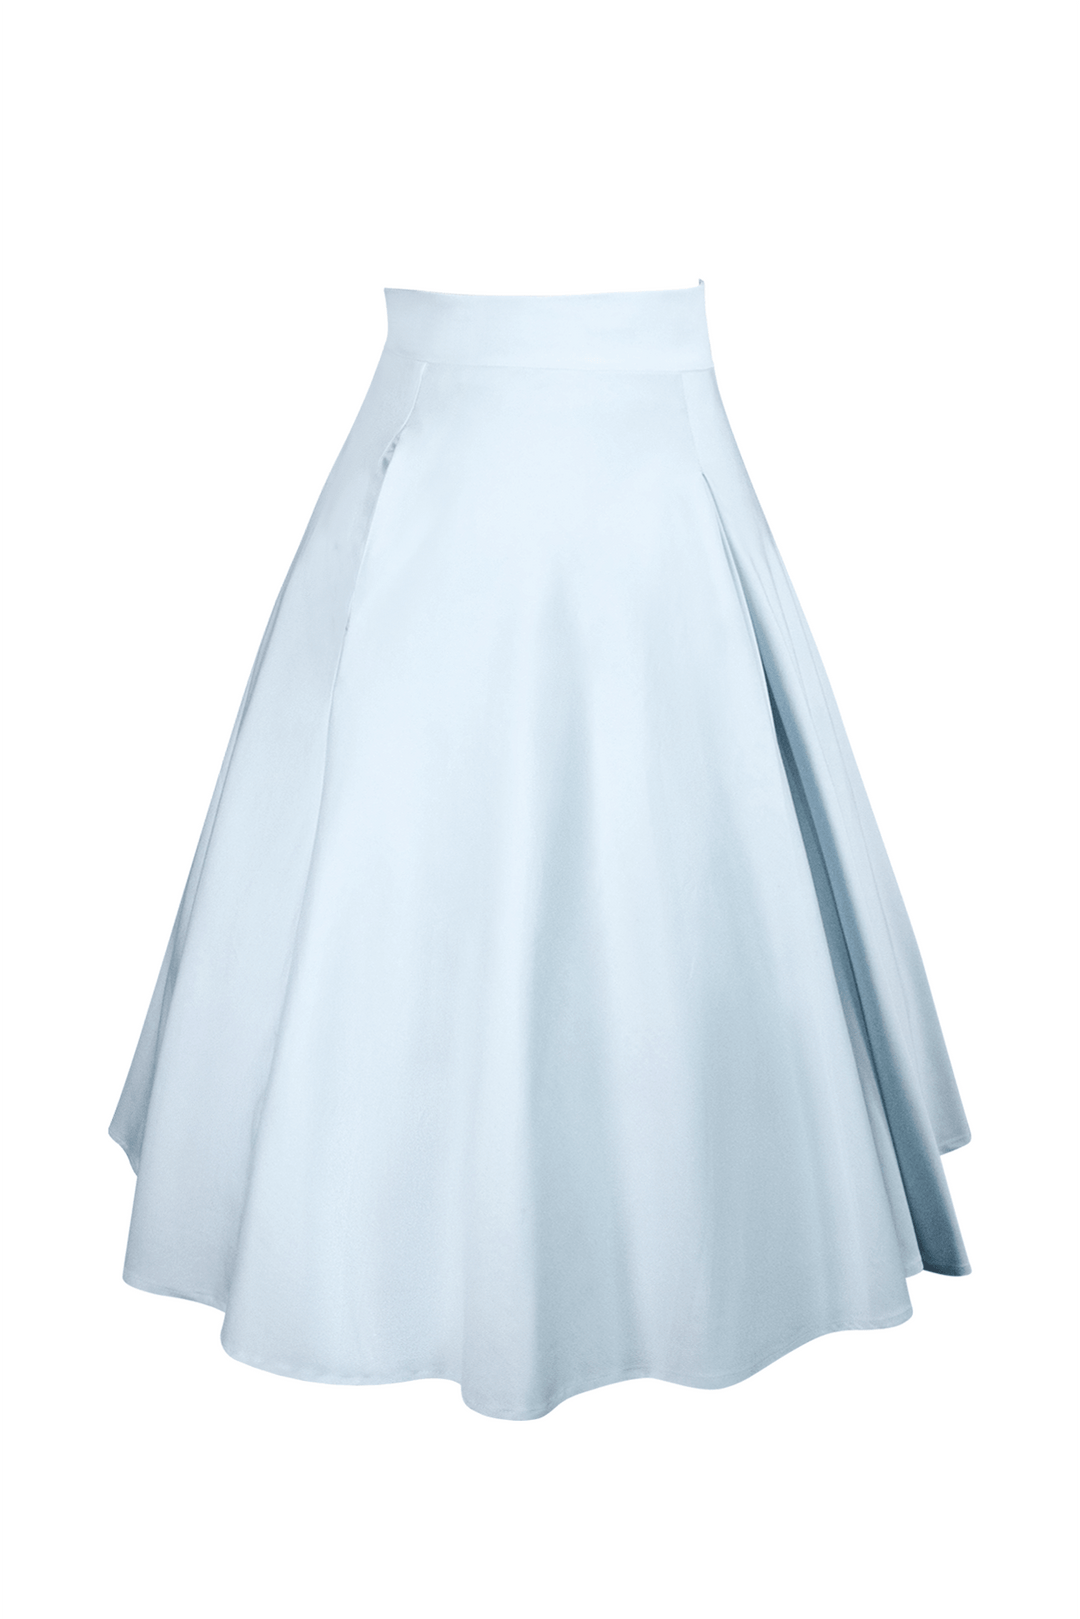 Tea Rose Classic Full Skirt (Blue)